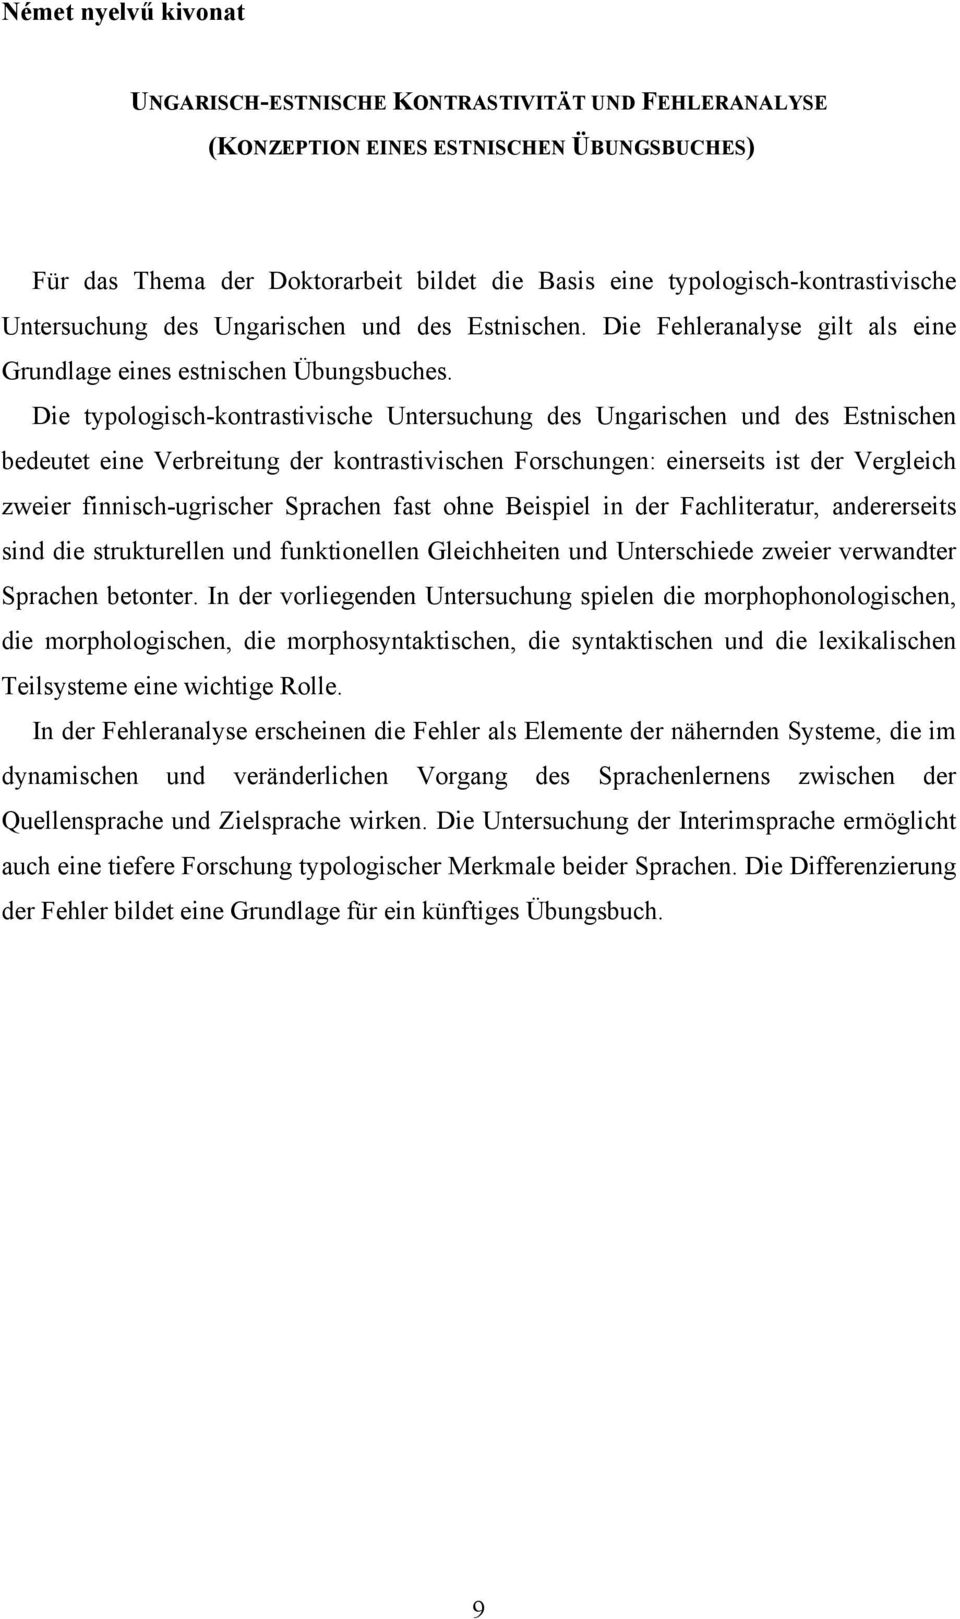 Die typologisch-kontrastivische Untersuchung des Ungarischen und des Estnischen bedeutet eine Verbreitung der kontrastivischen Forschungen: einerseits ist der Vergleich zweier finnisch-ugrischer